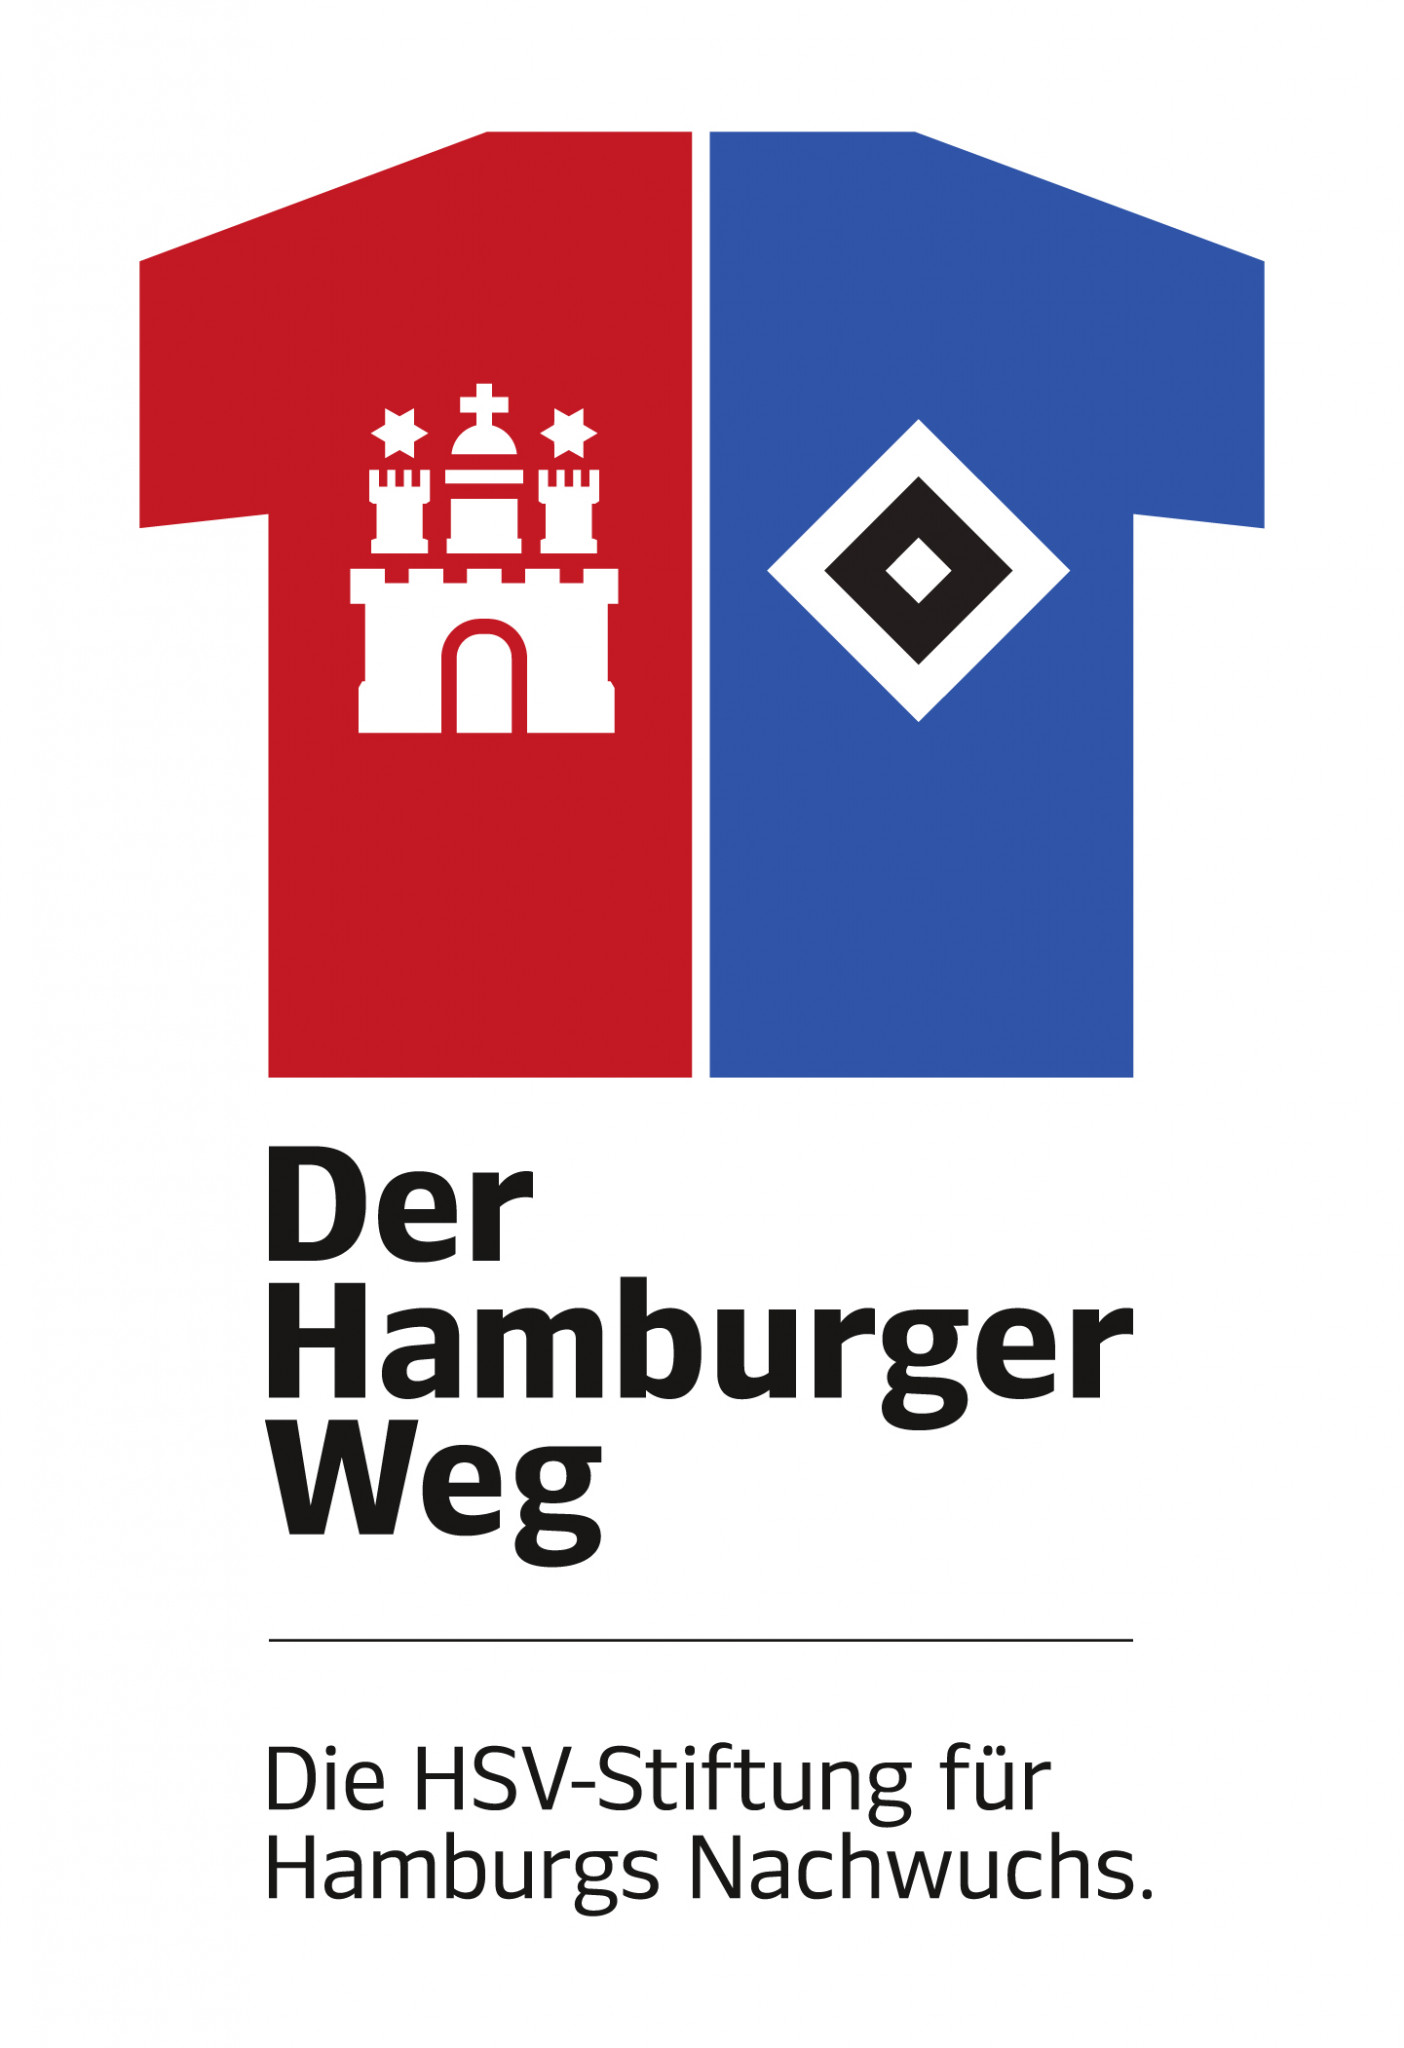 150702_hh_weg_logo_hoch_rgb